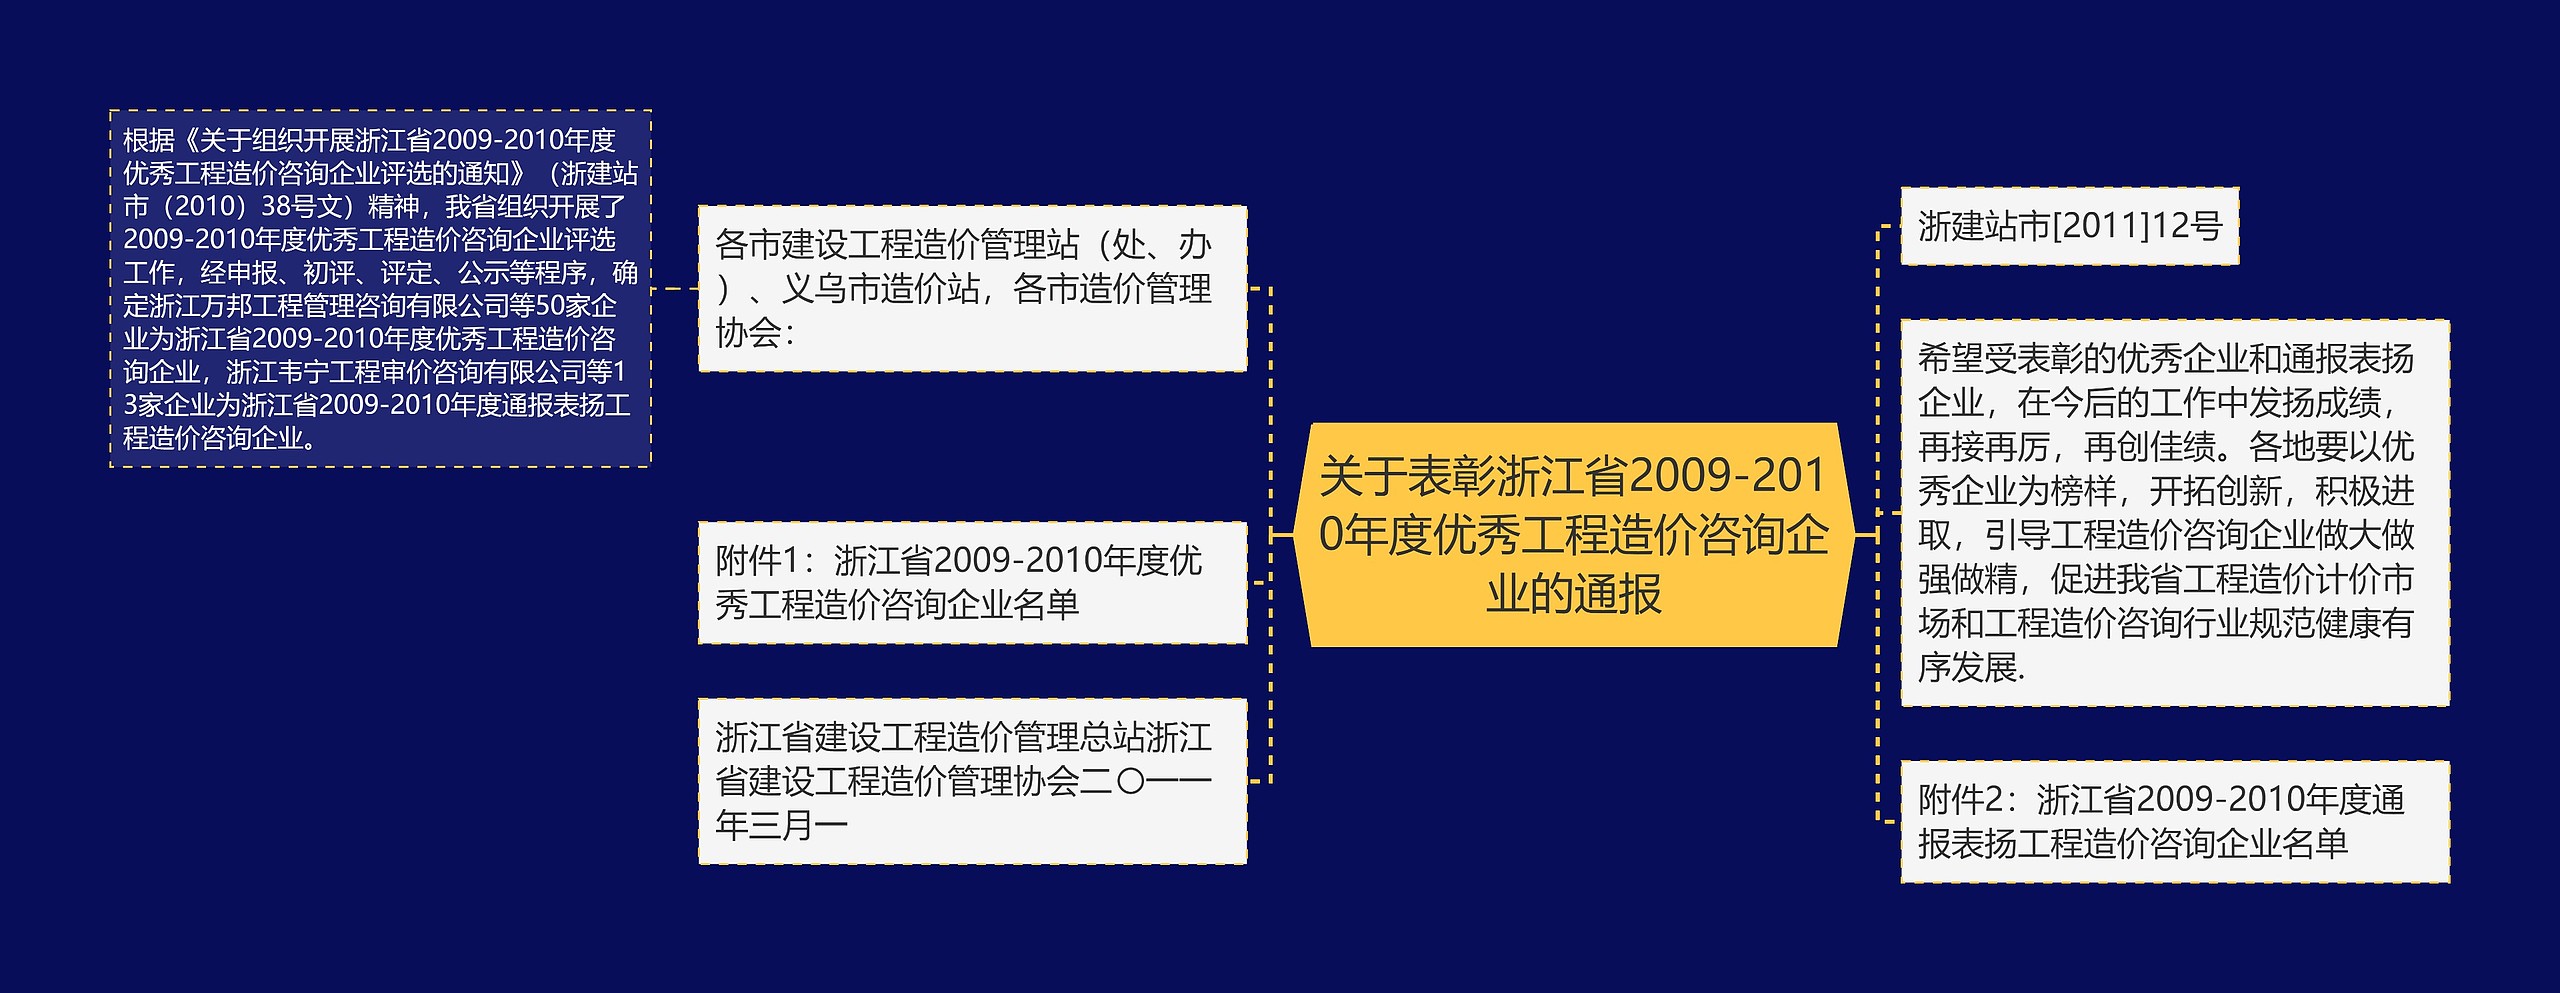 关于表彰浙江省2009-2010年度优秀工程造价咨询企业的通报思维导图